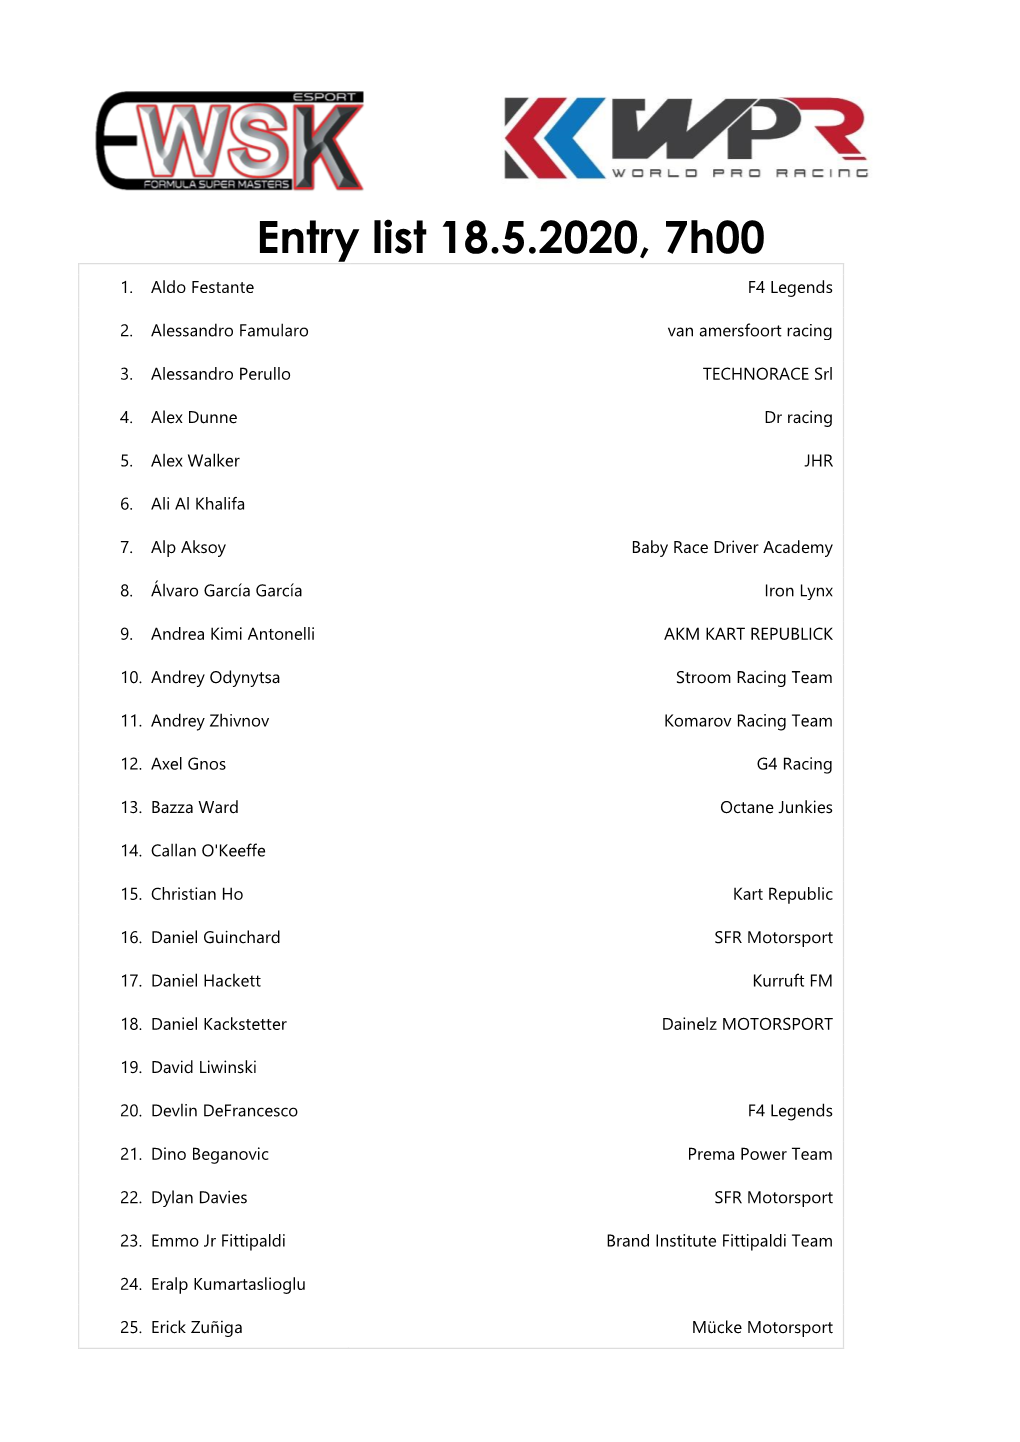 Entry List 18.5.2020, 7H00